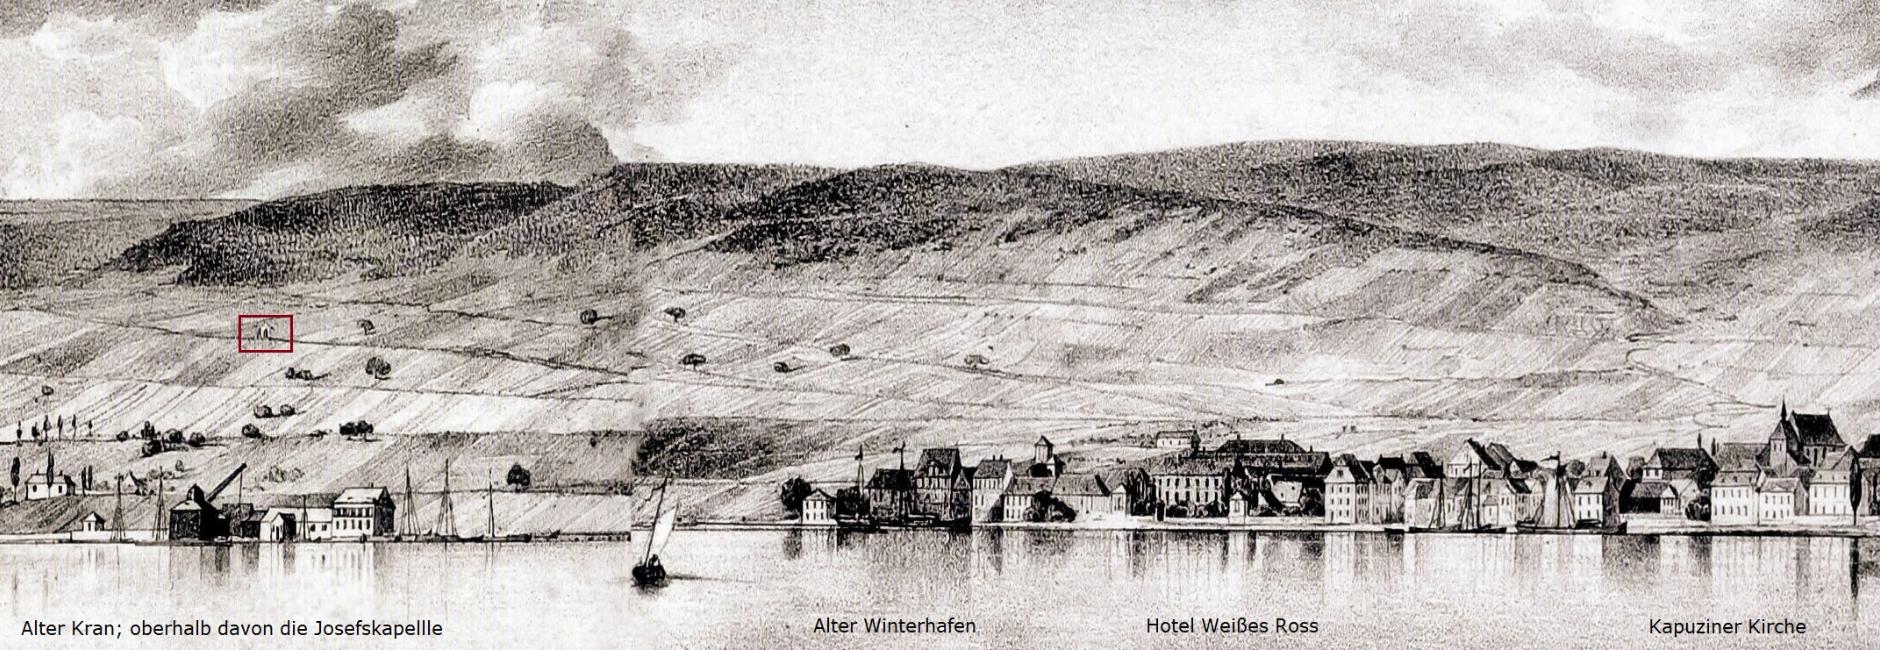 Panorama-Bild von 1833 (c) Historische Gesellschaft